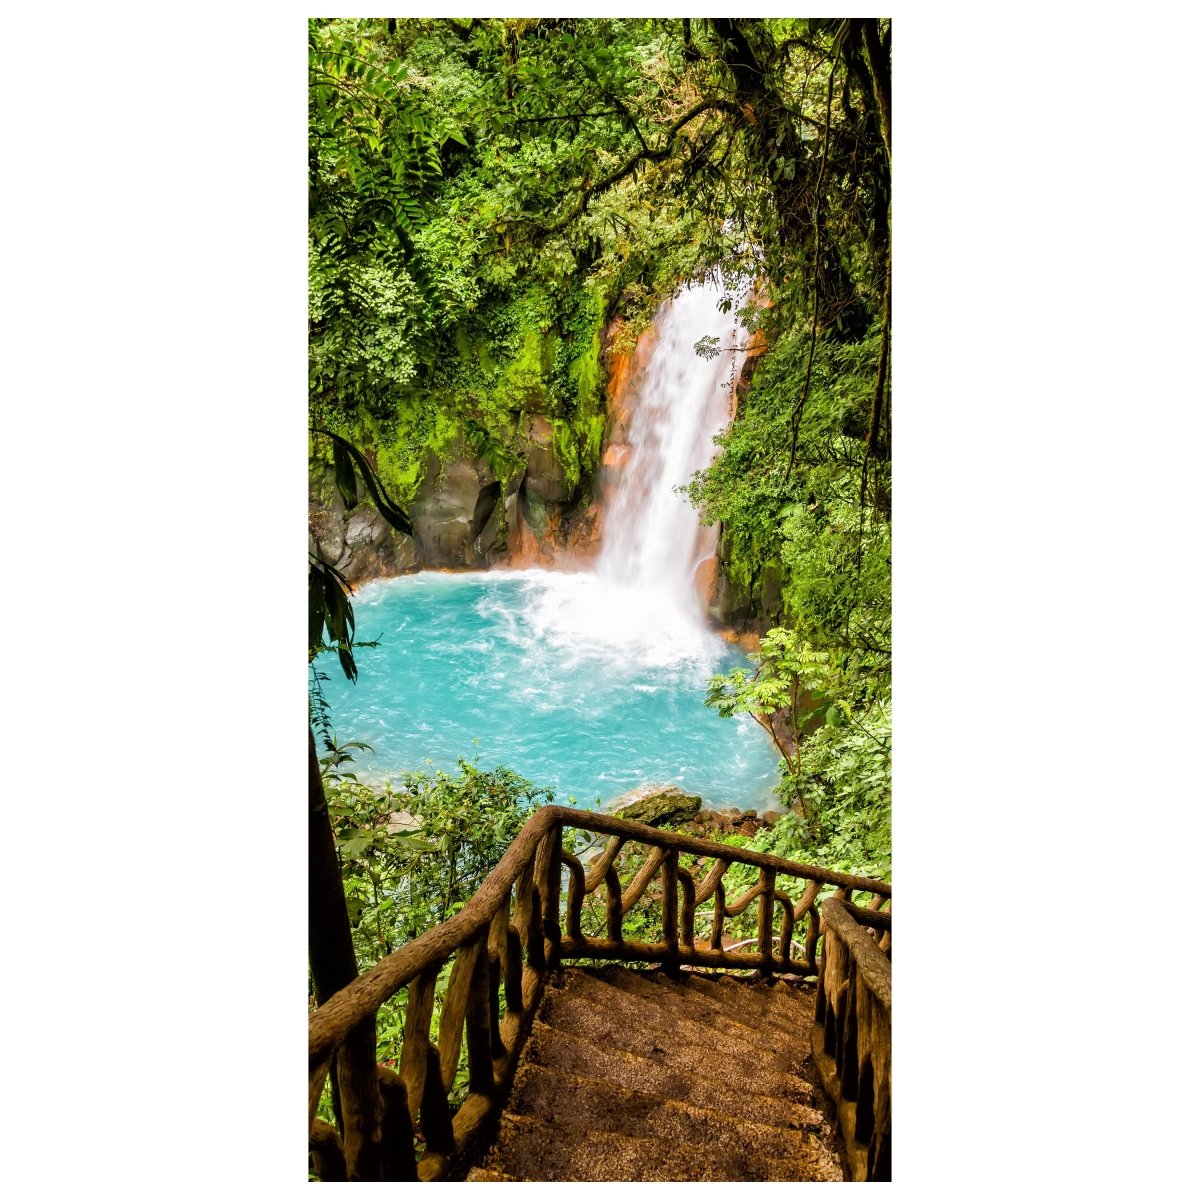 Türtapete Wasserfall & Treppe, Paradies, Geländer M1109 - Bild 2